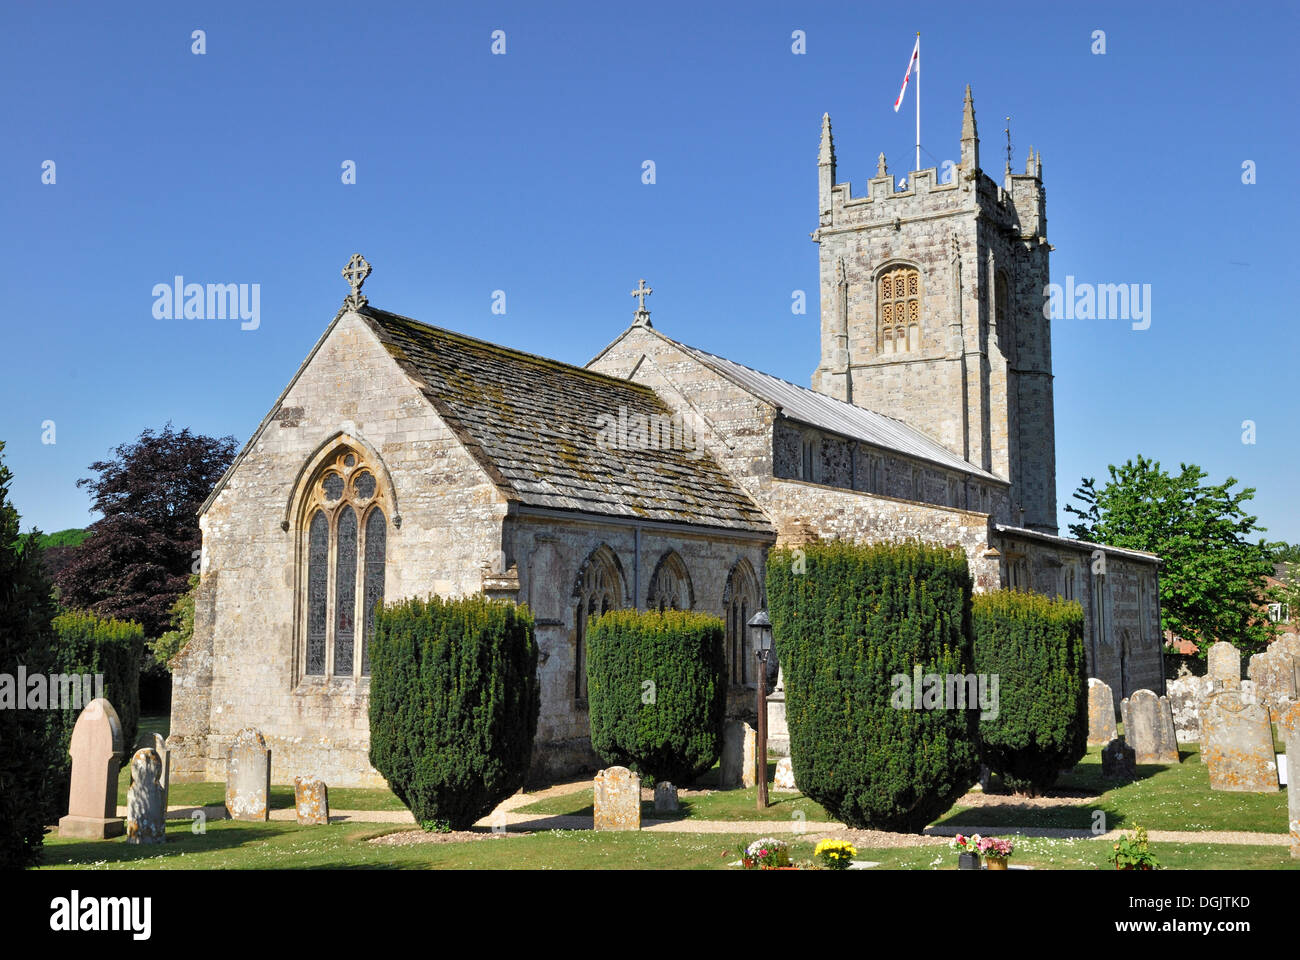 Eglise de Saint-Jean-Baptiste, Bere Regis, dans le Dorset, dans le sud de l'Angleterre, Angleterre, Royaume-Uni, Europe Banque D'Images